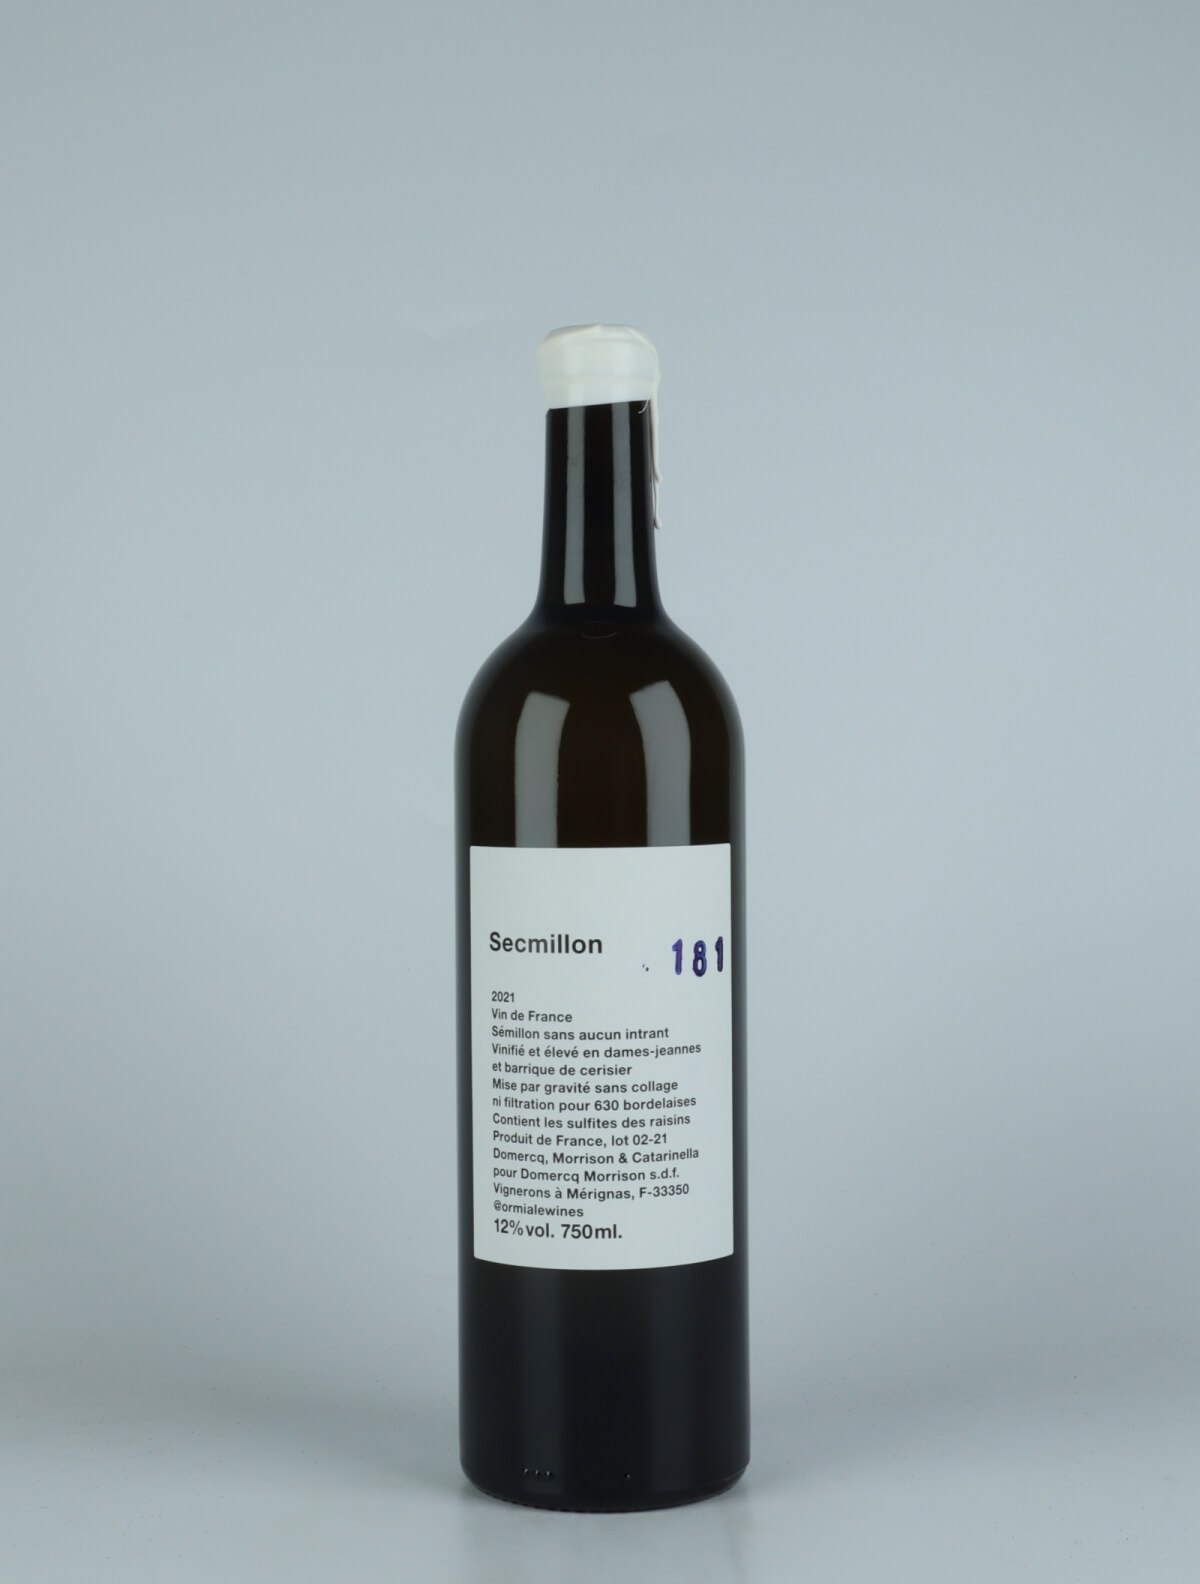 En flaske 2021 Secmillon Hvidvin fra Ormiale, Bordeaux i Frankrig